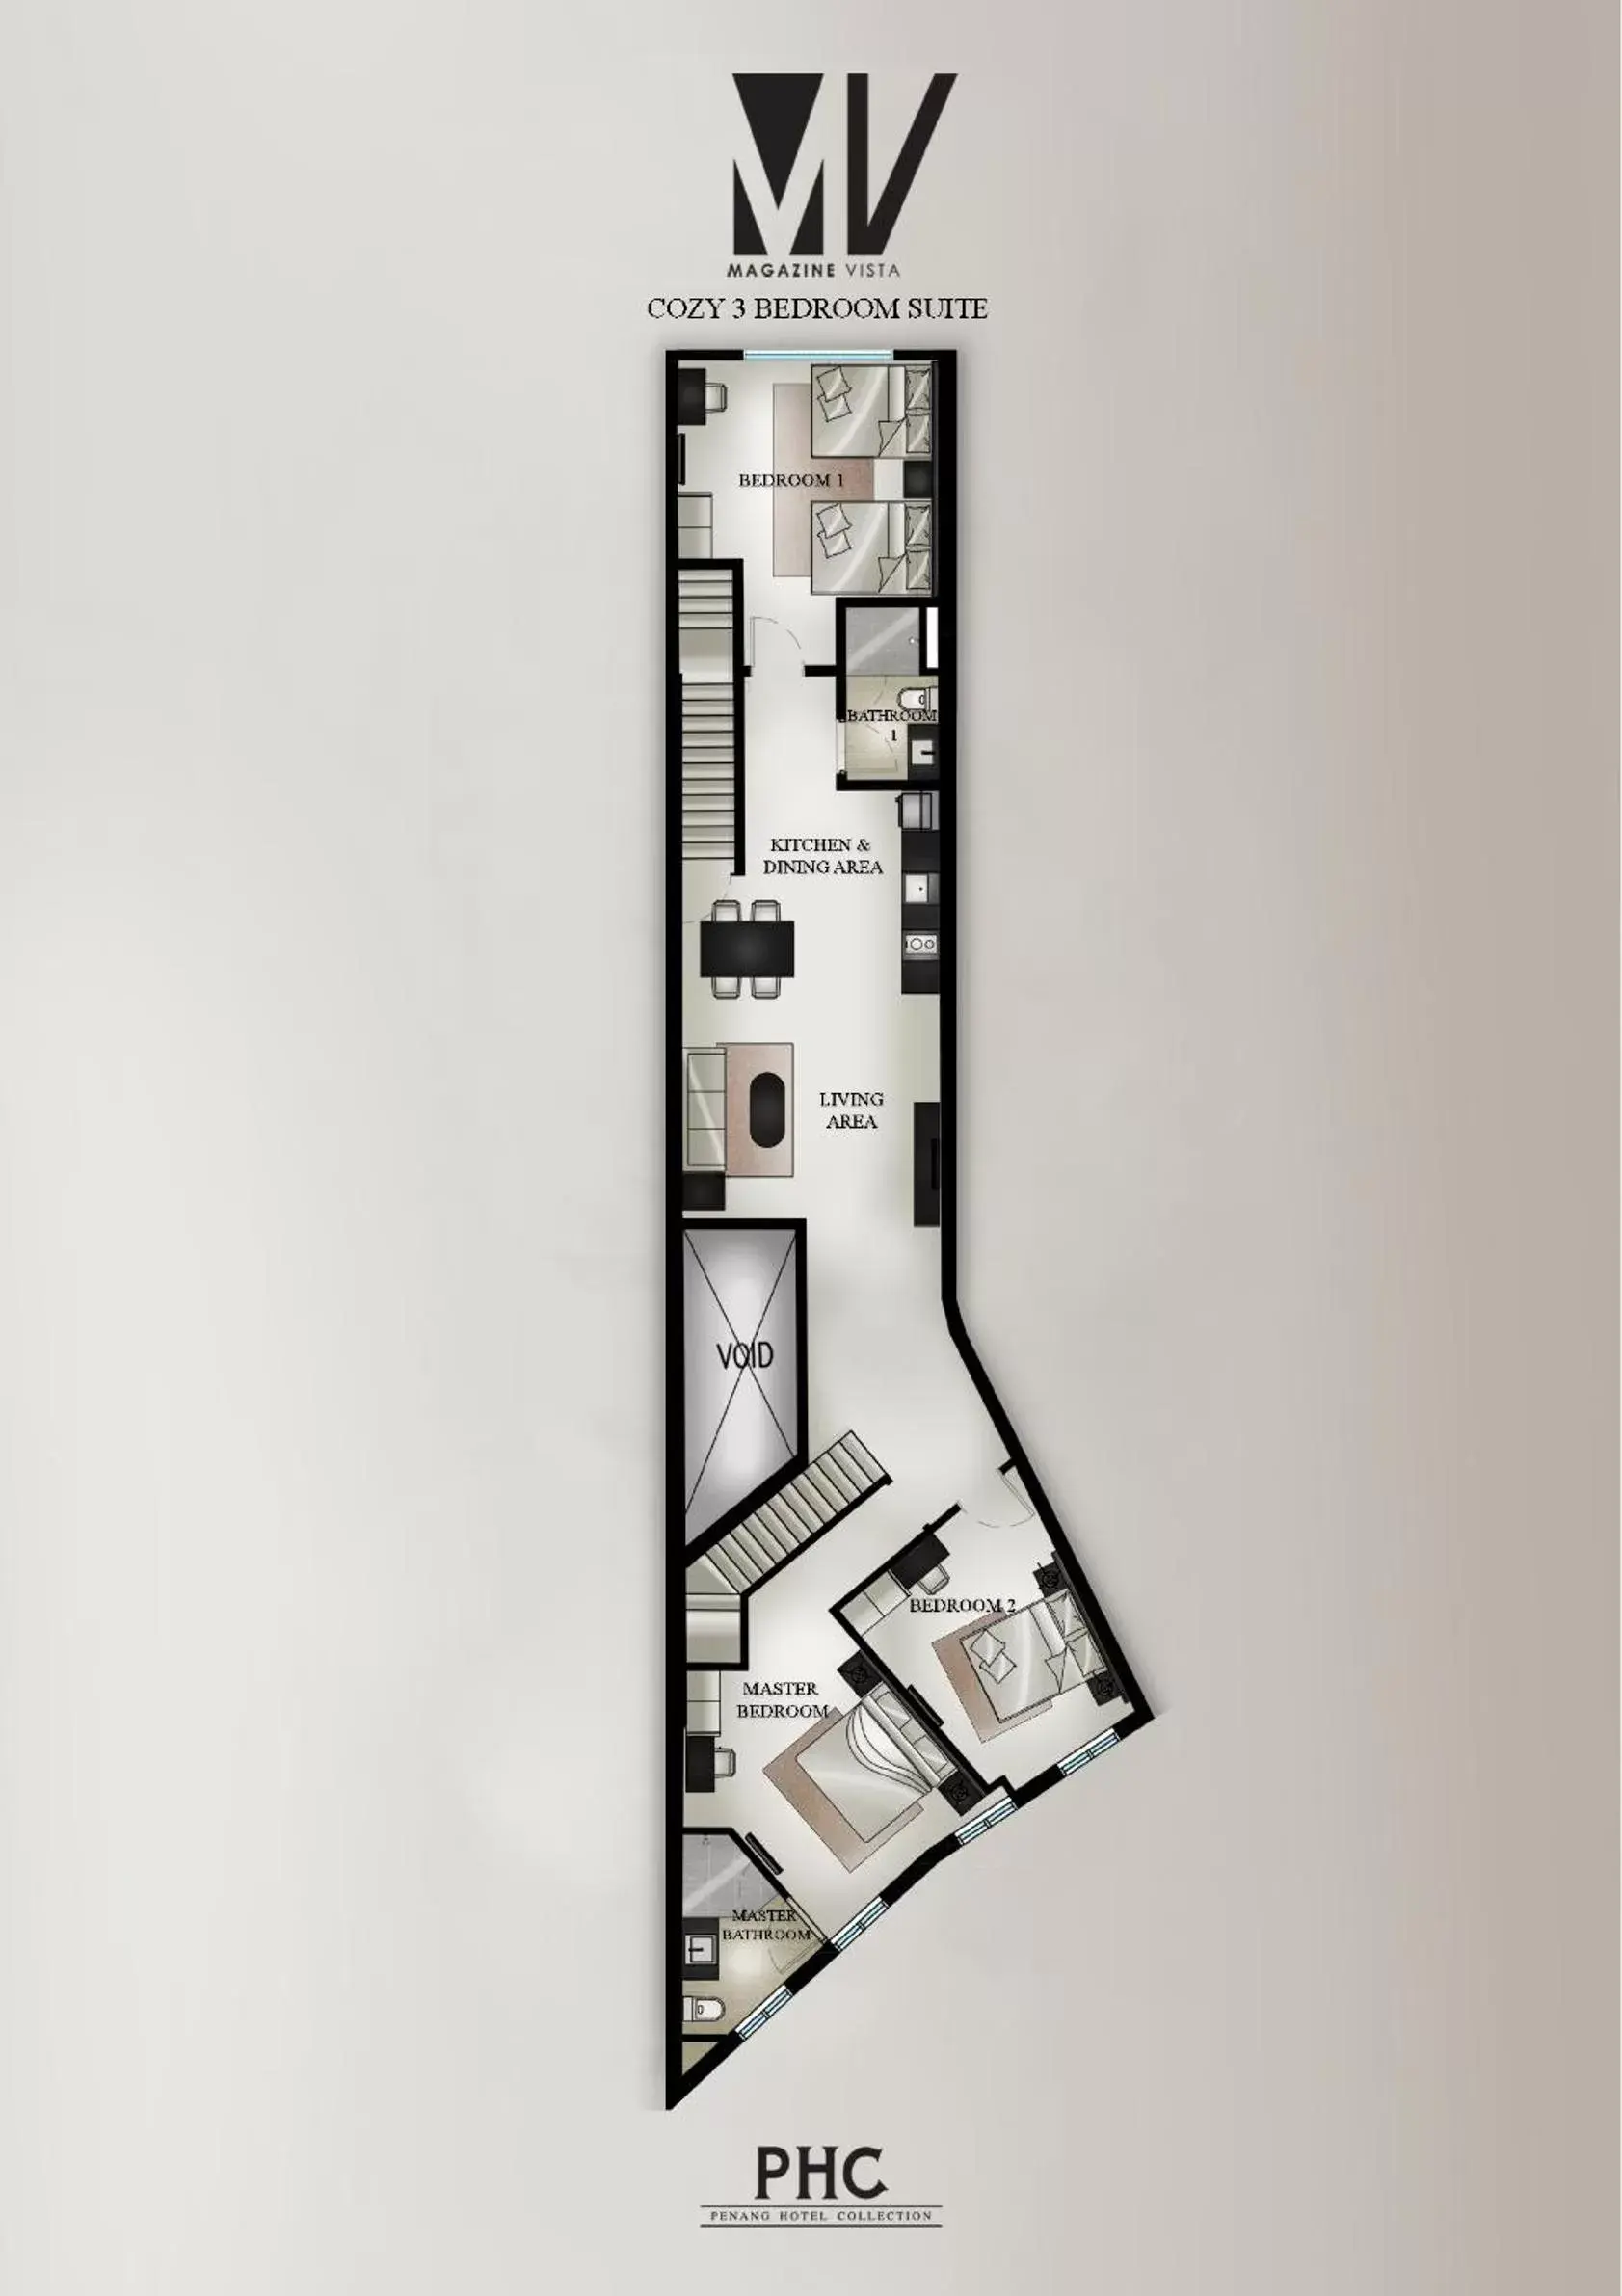 Floor Plan in Magazine Vista Hotel by PHC